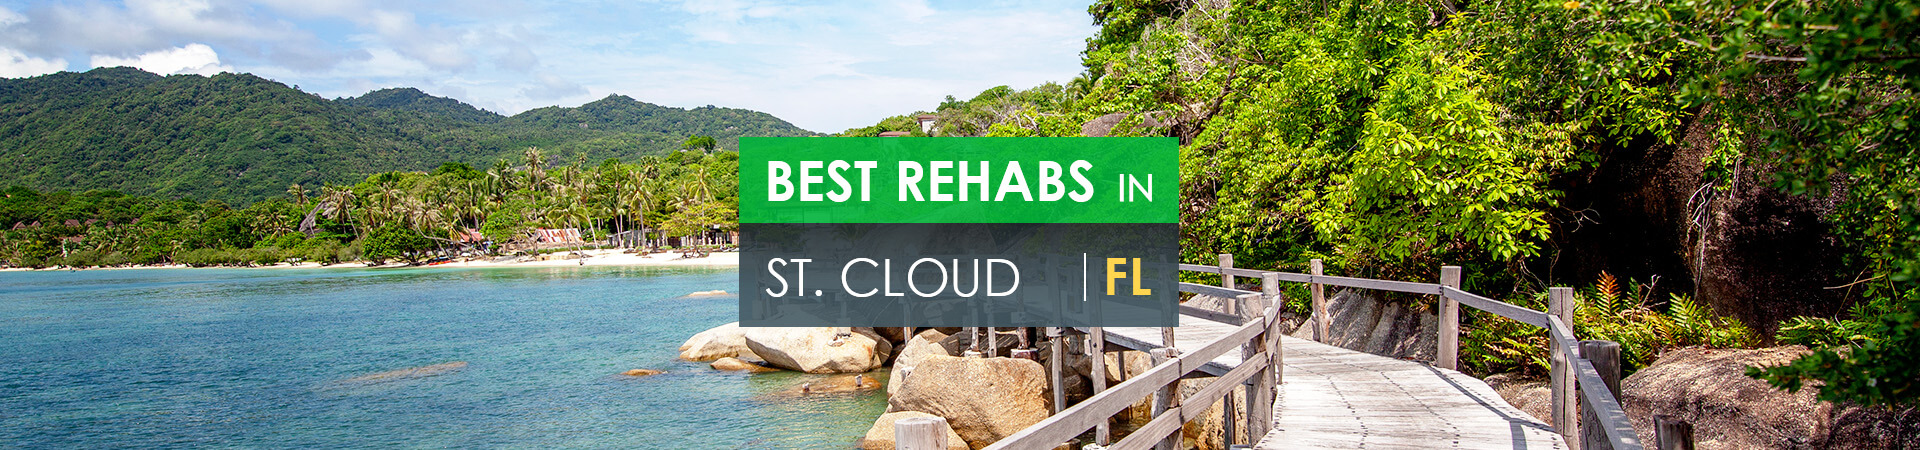 Best rehabs in St. Cloud, FL